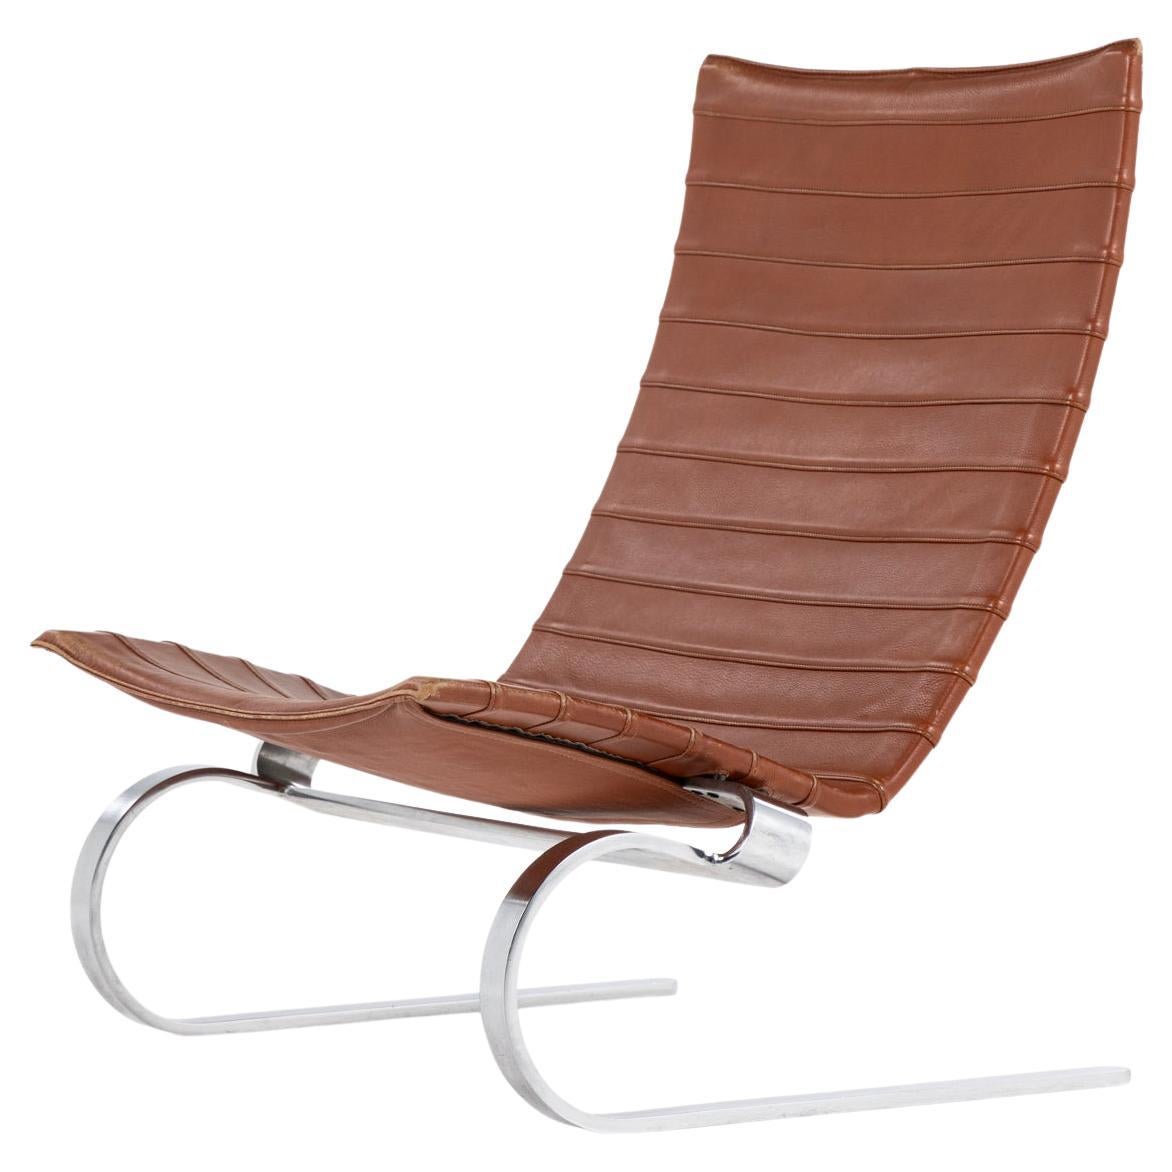 PK 20 easy chair by Poul Kjærholm / E. Kold Christensen. 2 pcs. in stock. For Sale